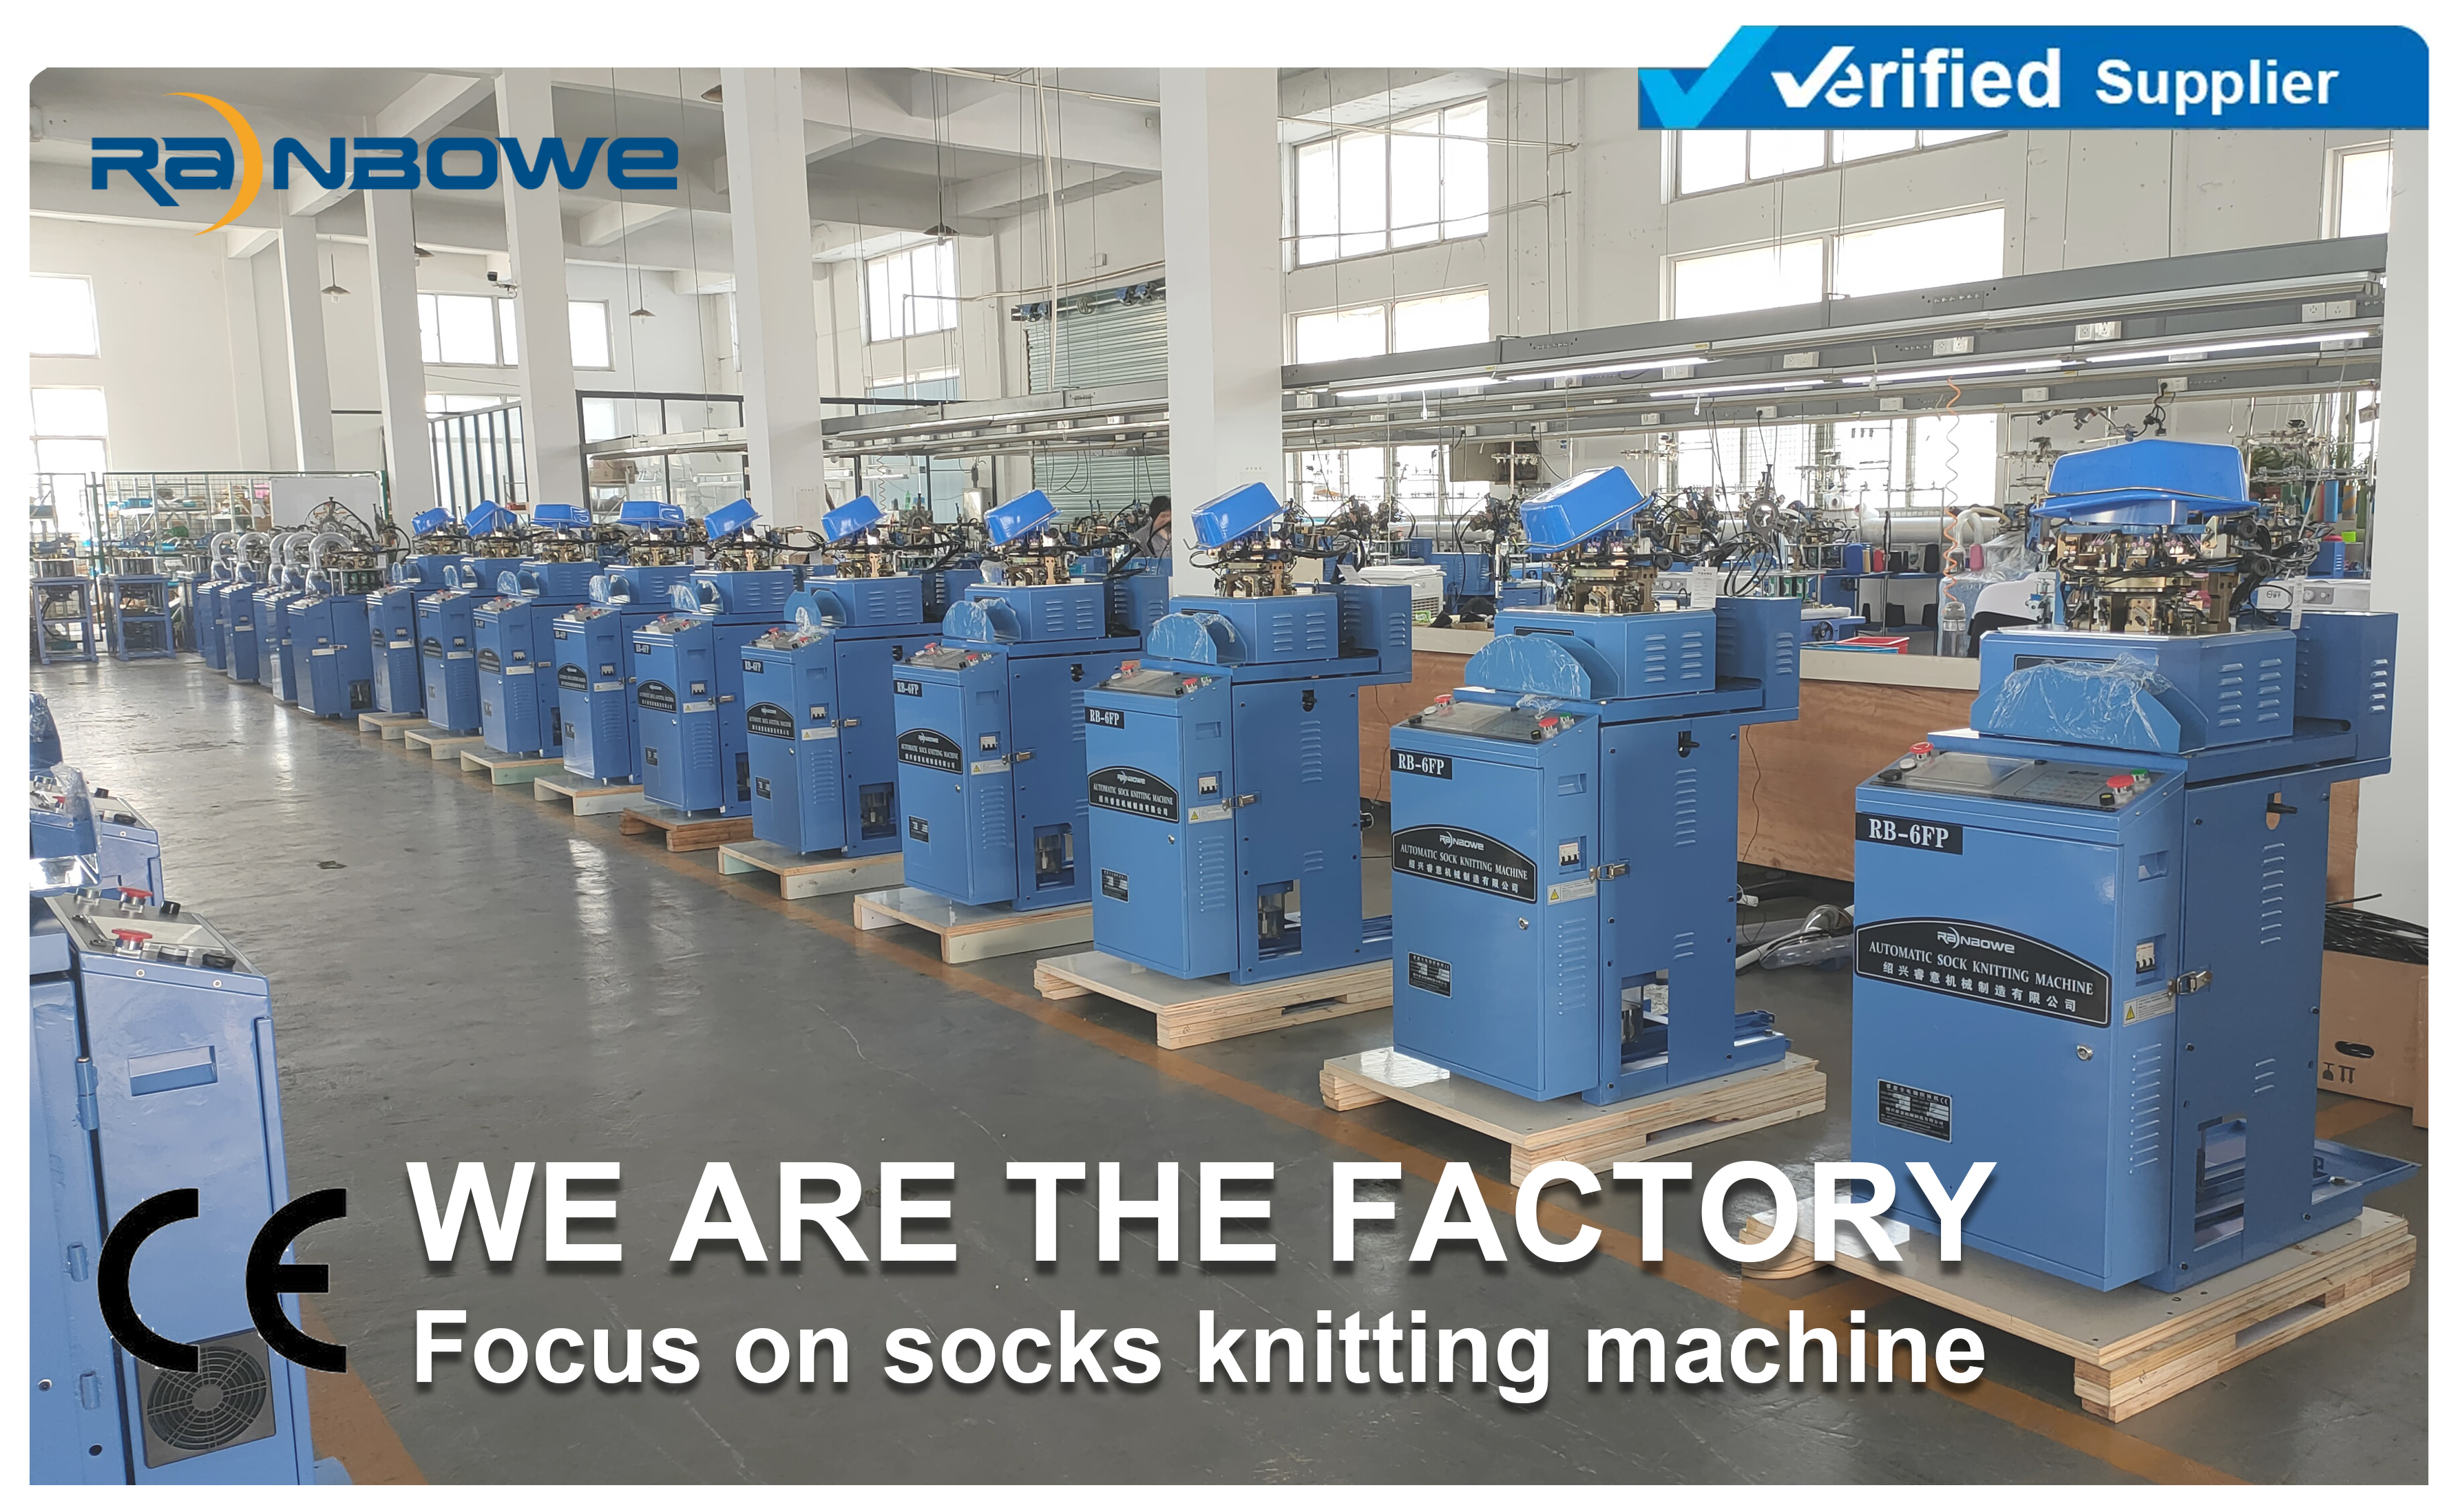 ¿Busca una fábrica profesional de máquinas de calcetines?¡No busque más!